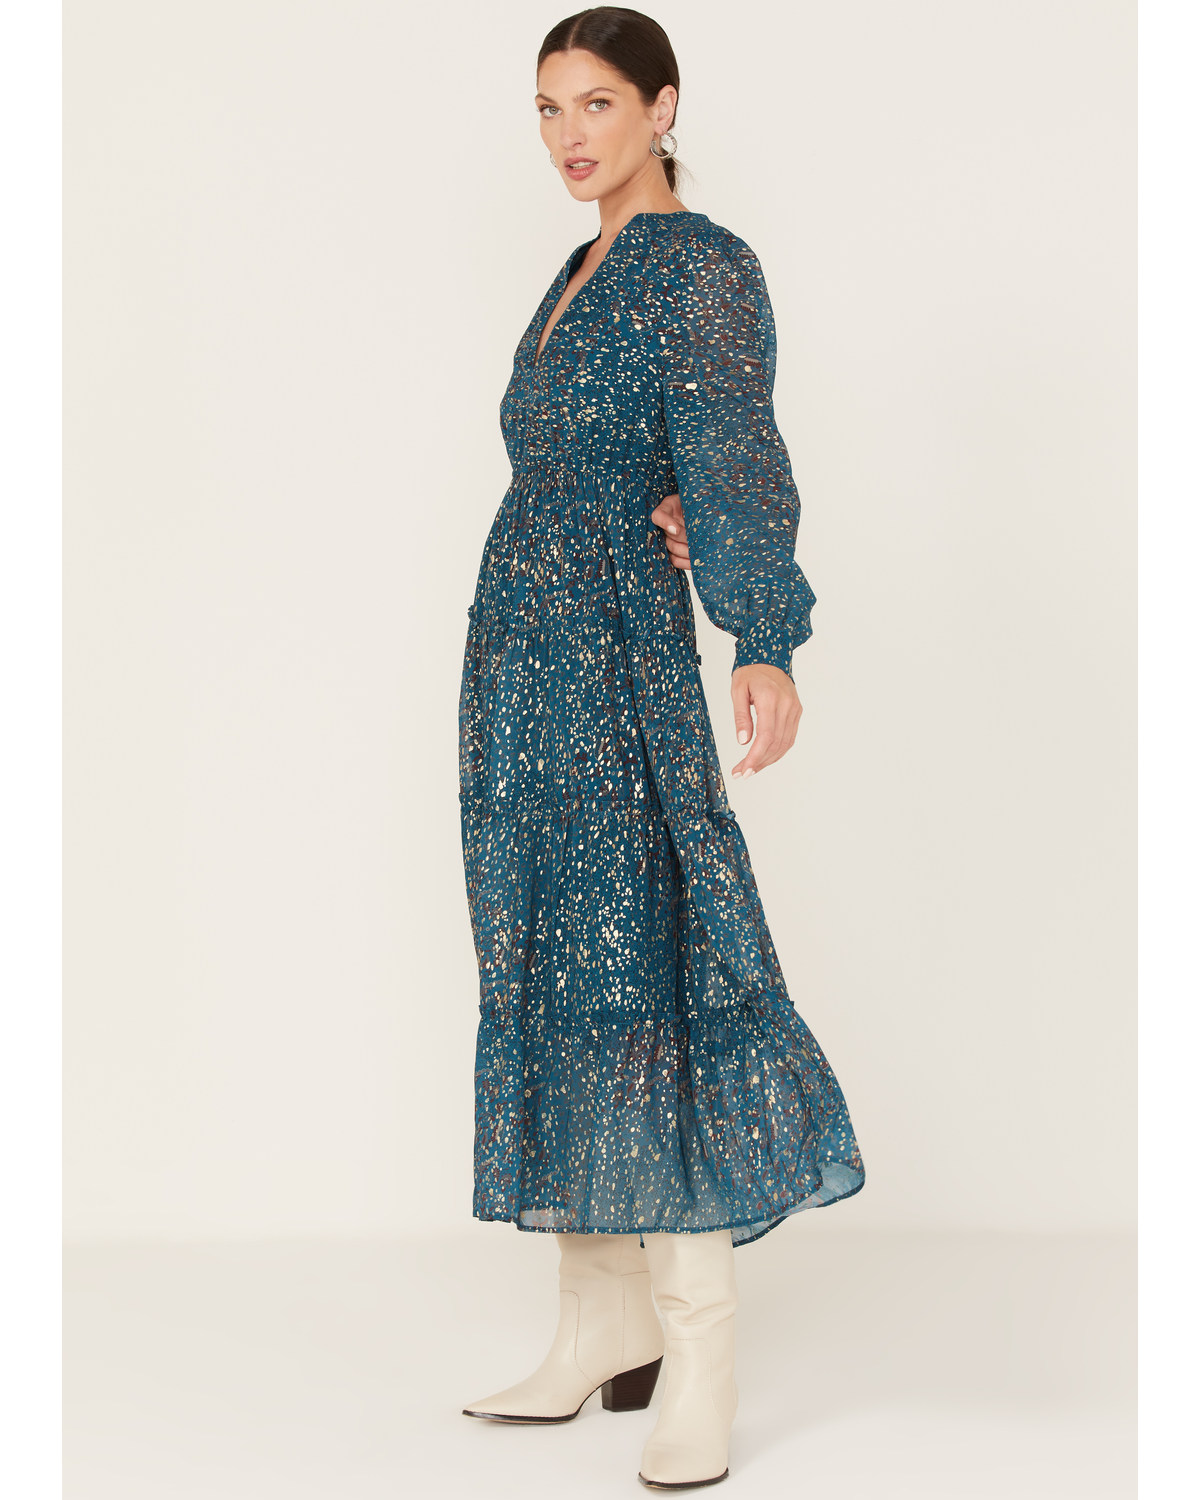 Revel Women's Foil Splatter Tiered Midi Dress